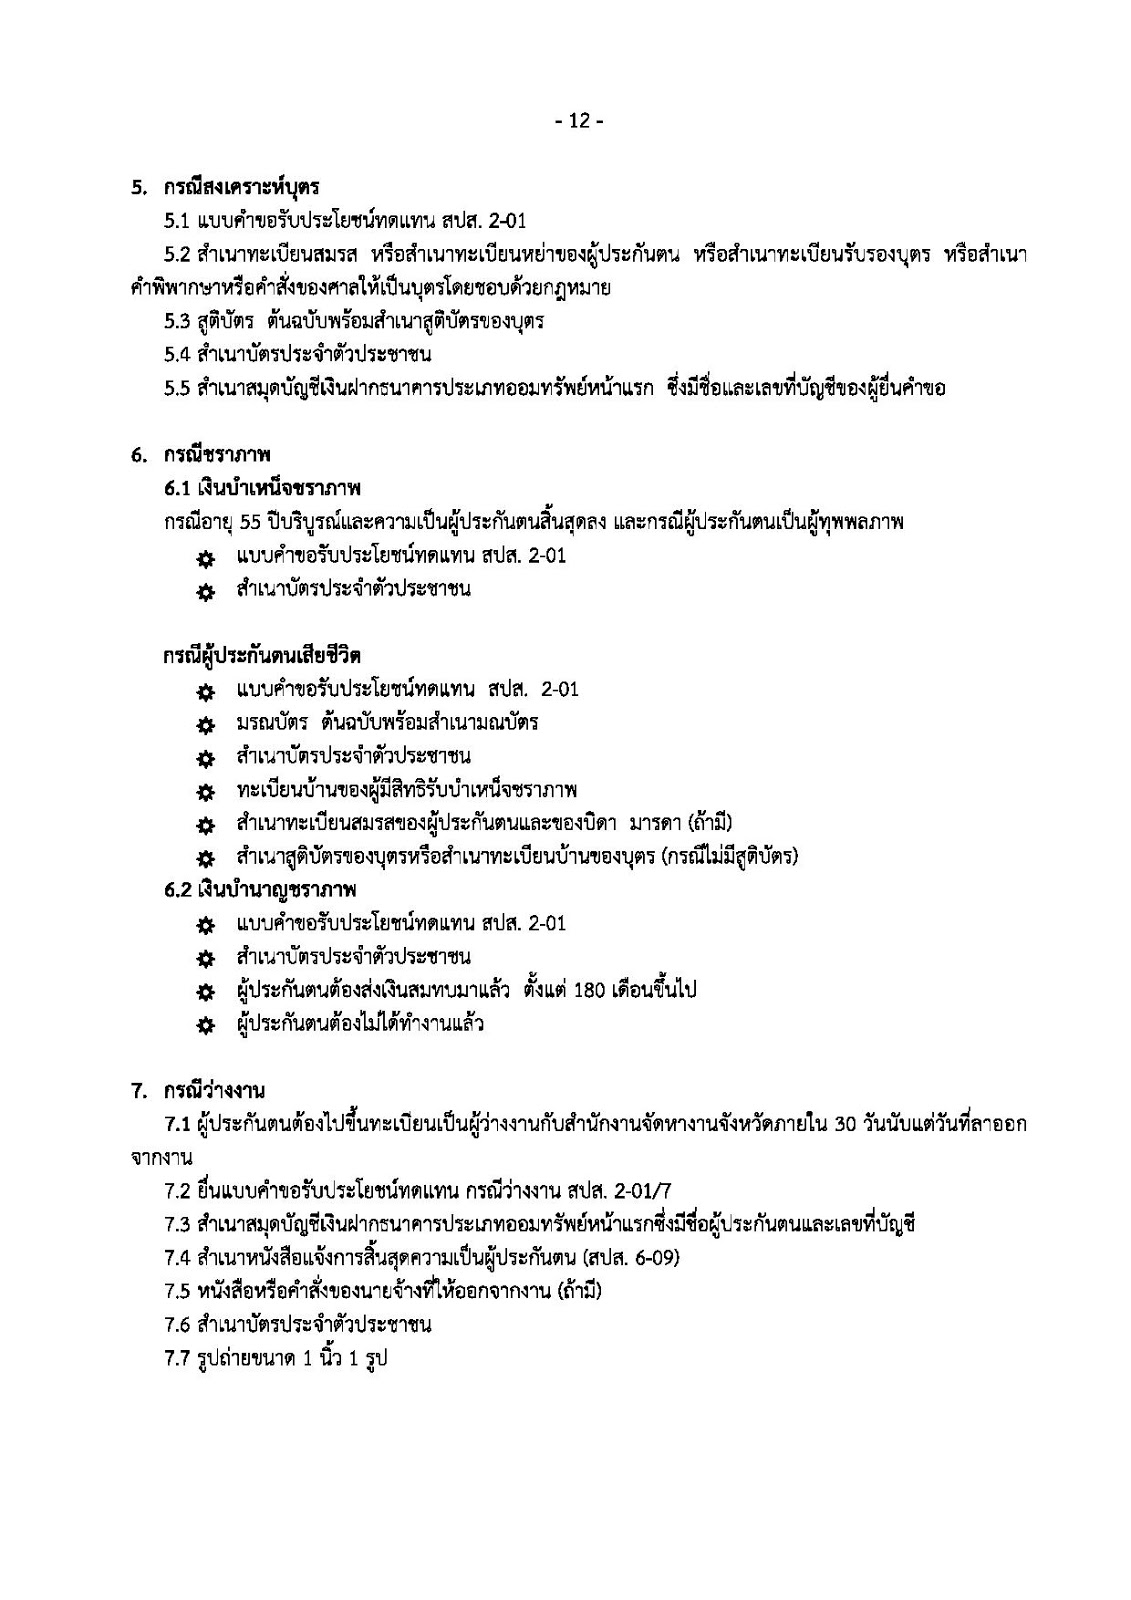 Thai Knows: แบบฟอร์มประกันสังคม 6-09 Excel